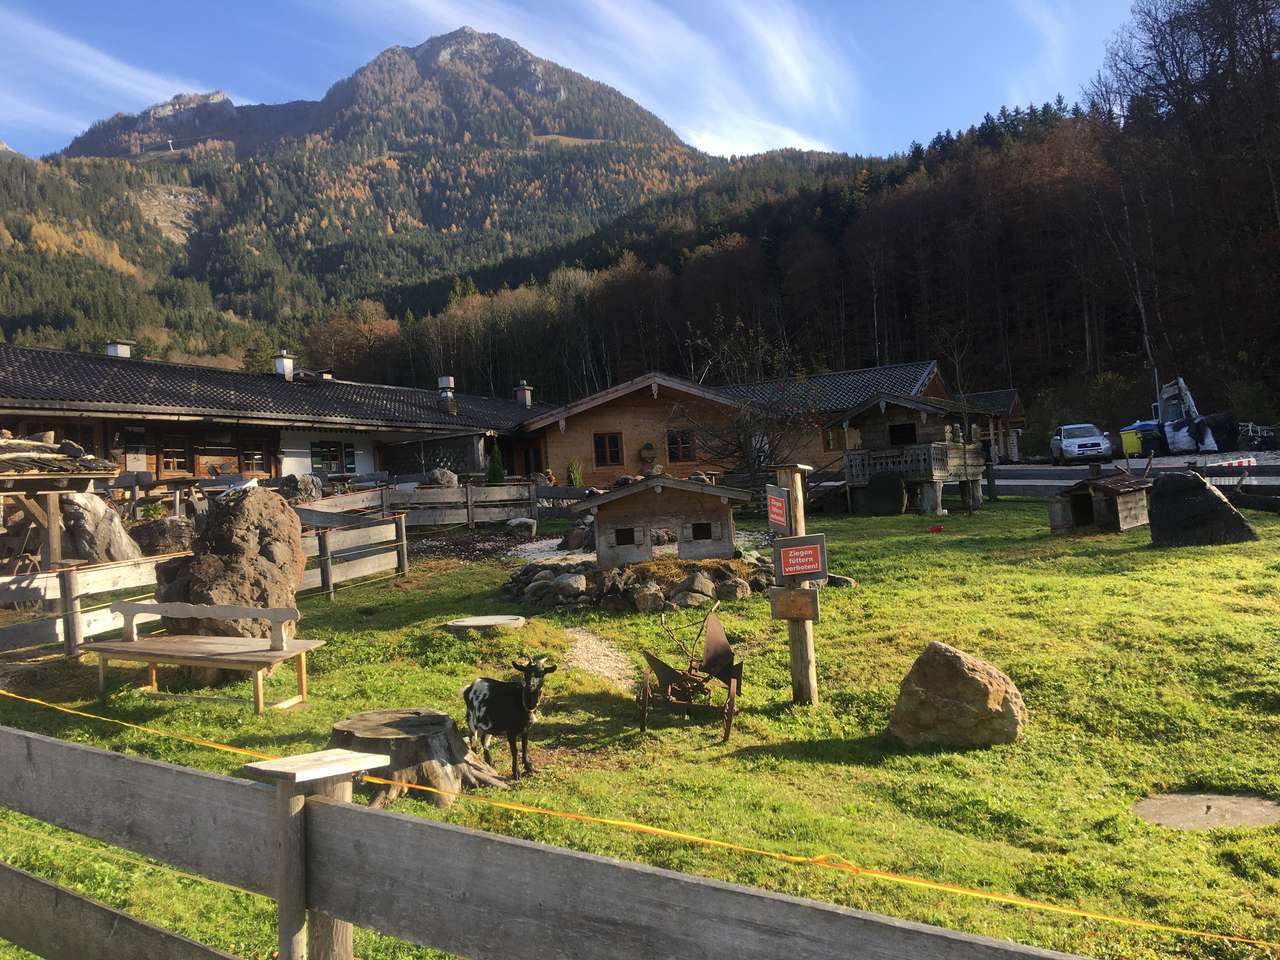 Козички у нас в Альпахе онлайн-пазл